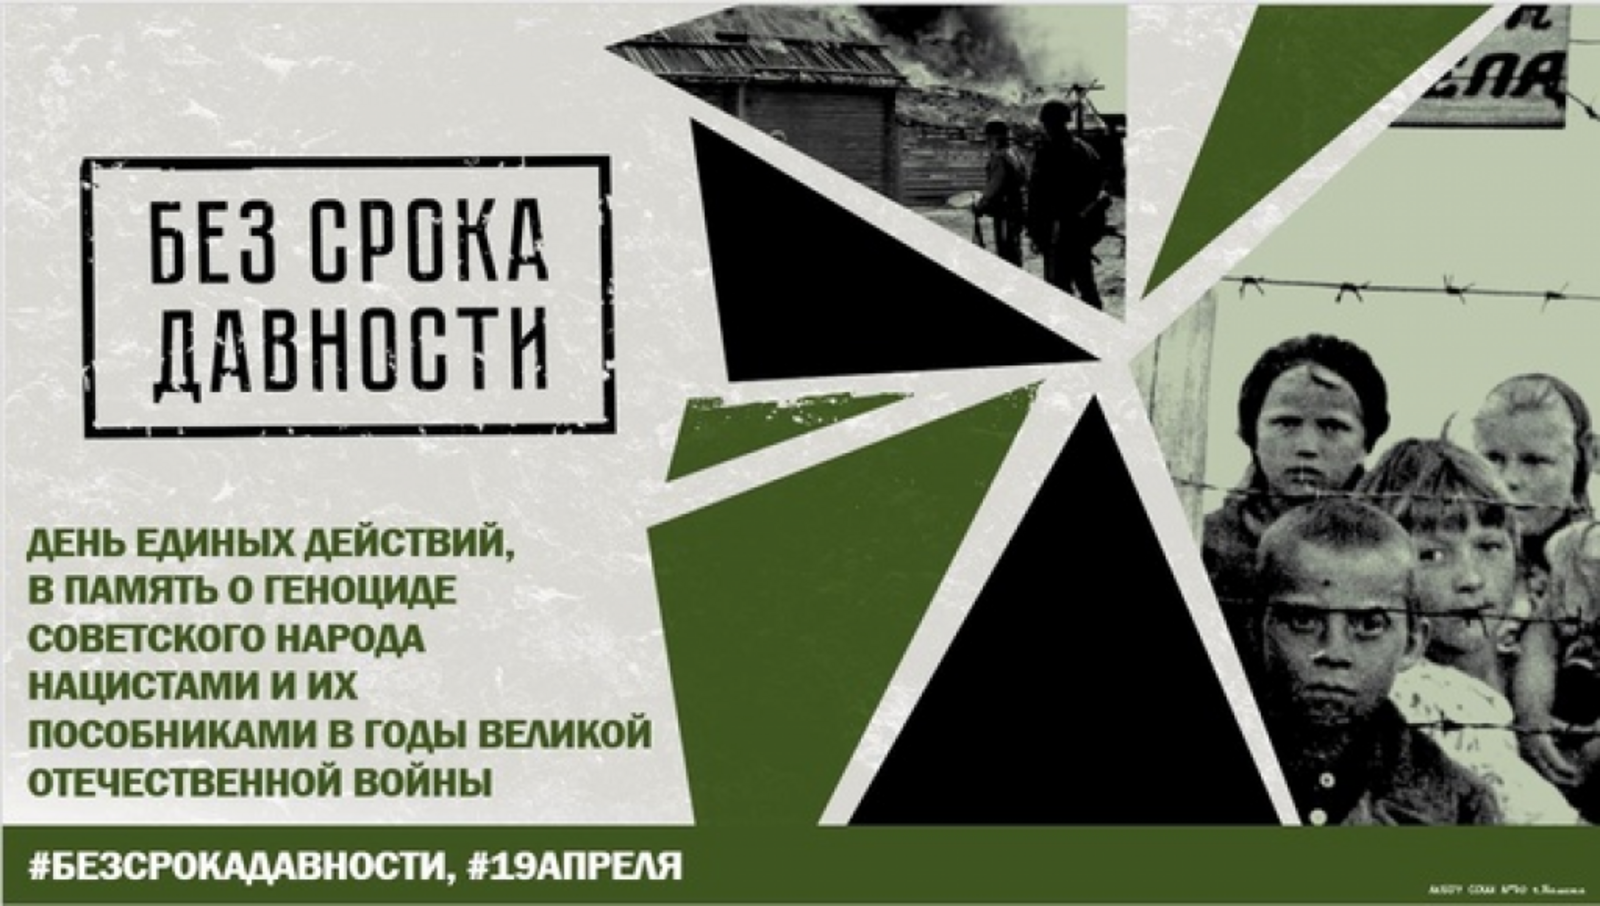 В Башкирии пройдёт День единых действий в память о геноциде советского народа нацистами и их пособниками в годы ВОВ